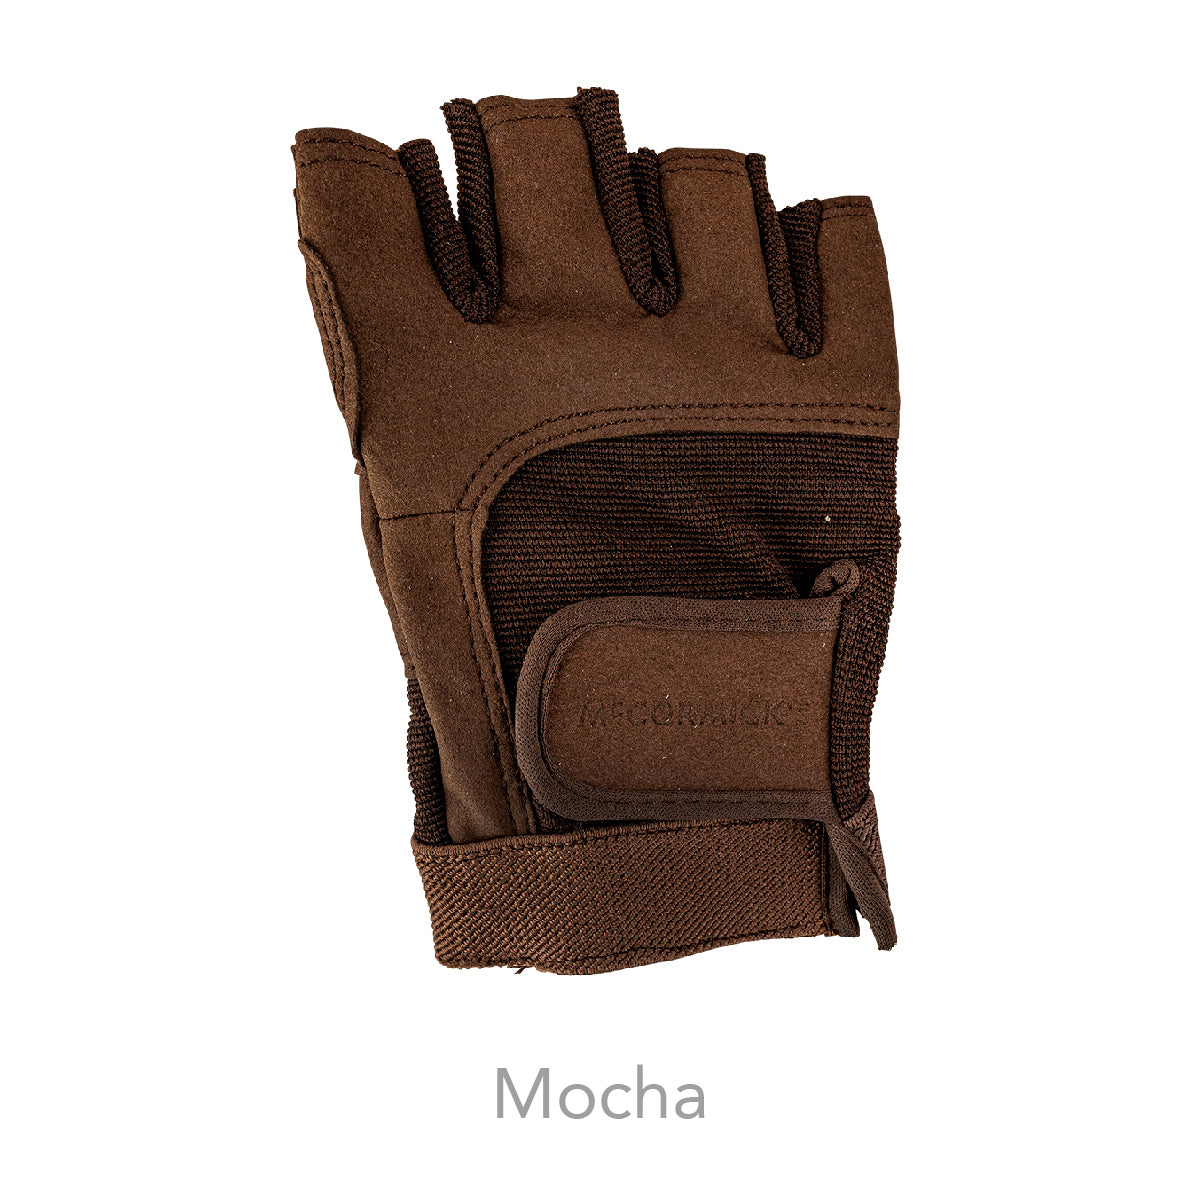 McCormick's Washable Guard Glove